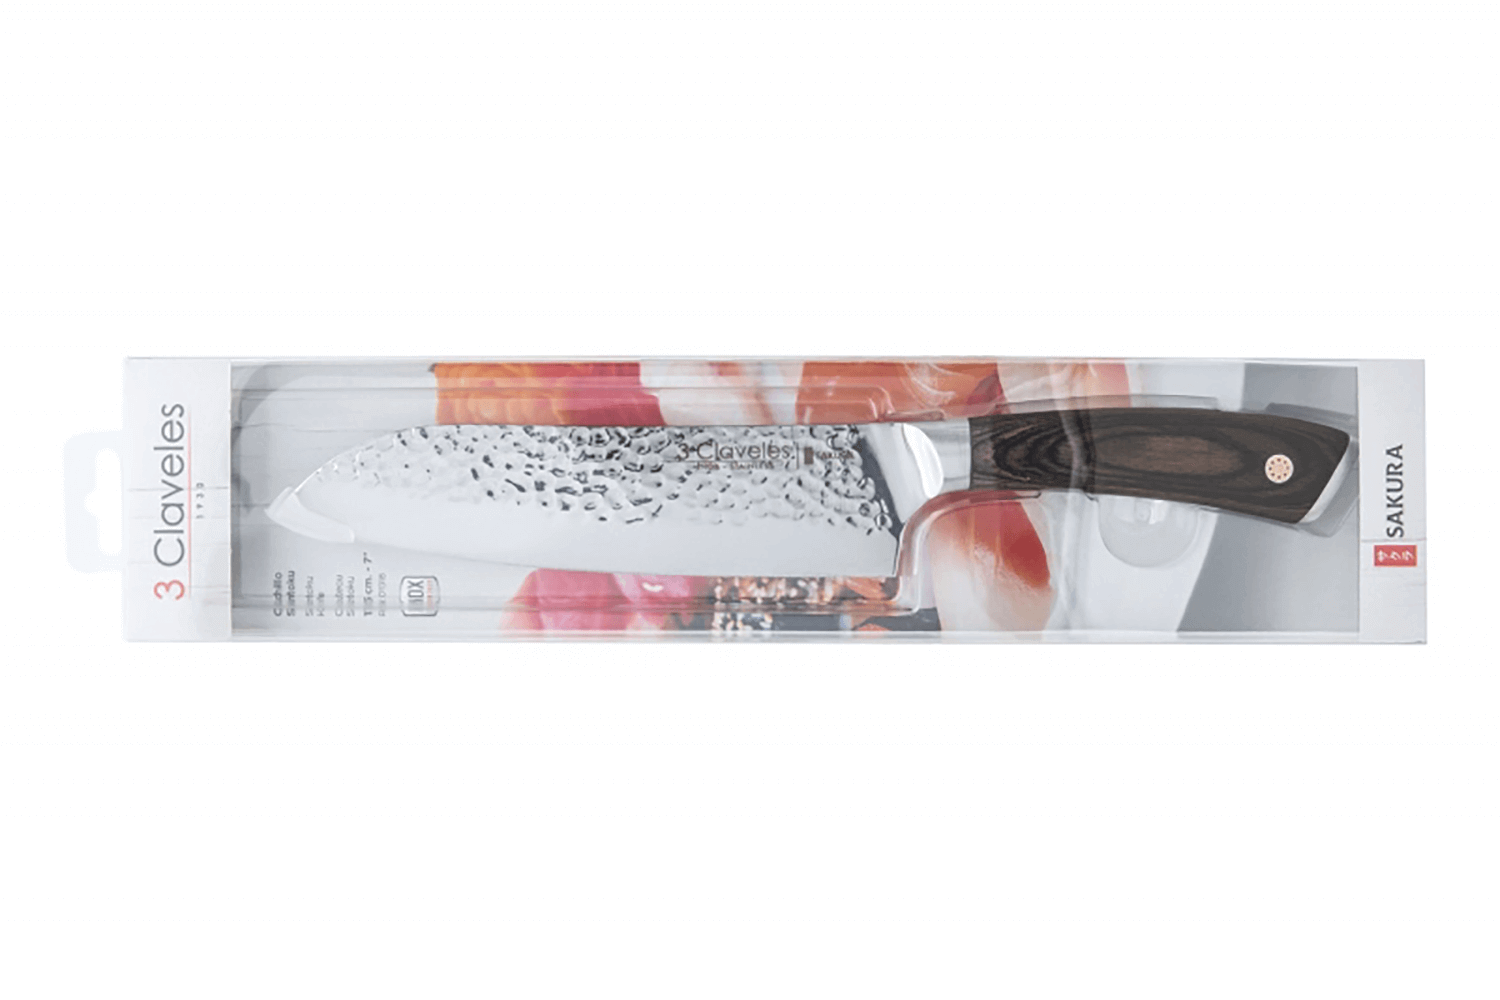 Couteau Santoku Sakura